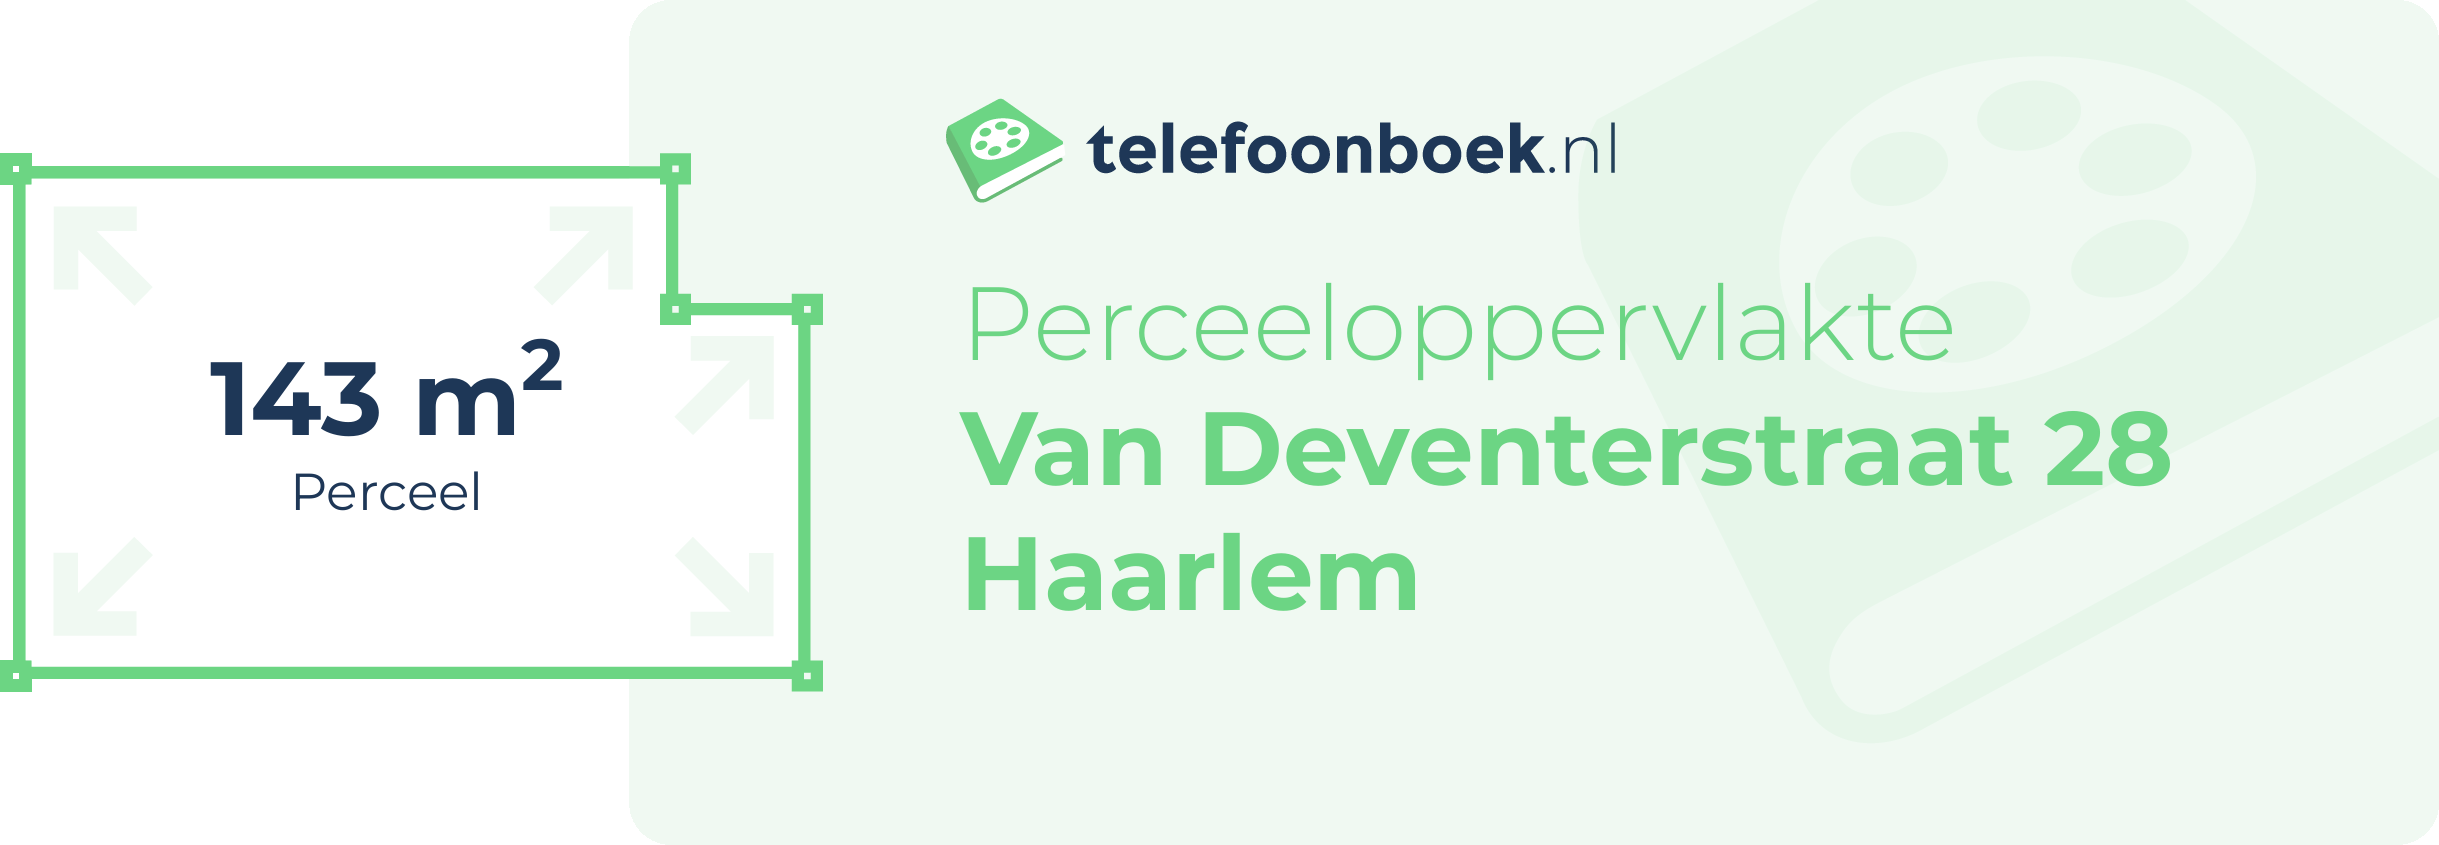 Perceeloppervlakte Van Deventerstraat 28 Haarlem